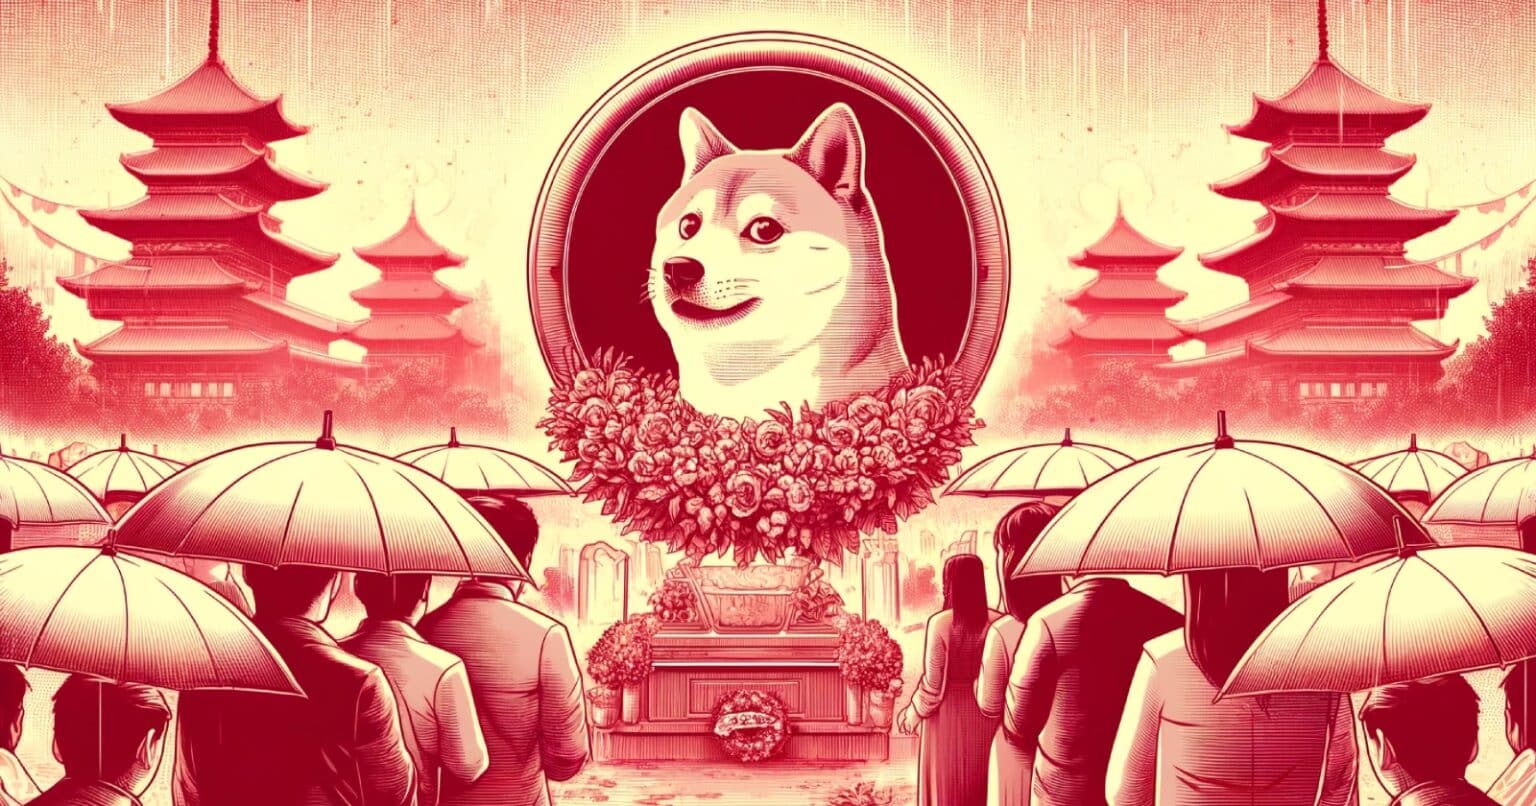 Morre Kabosu, o cachorro que inspirou o Dogecoin